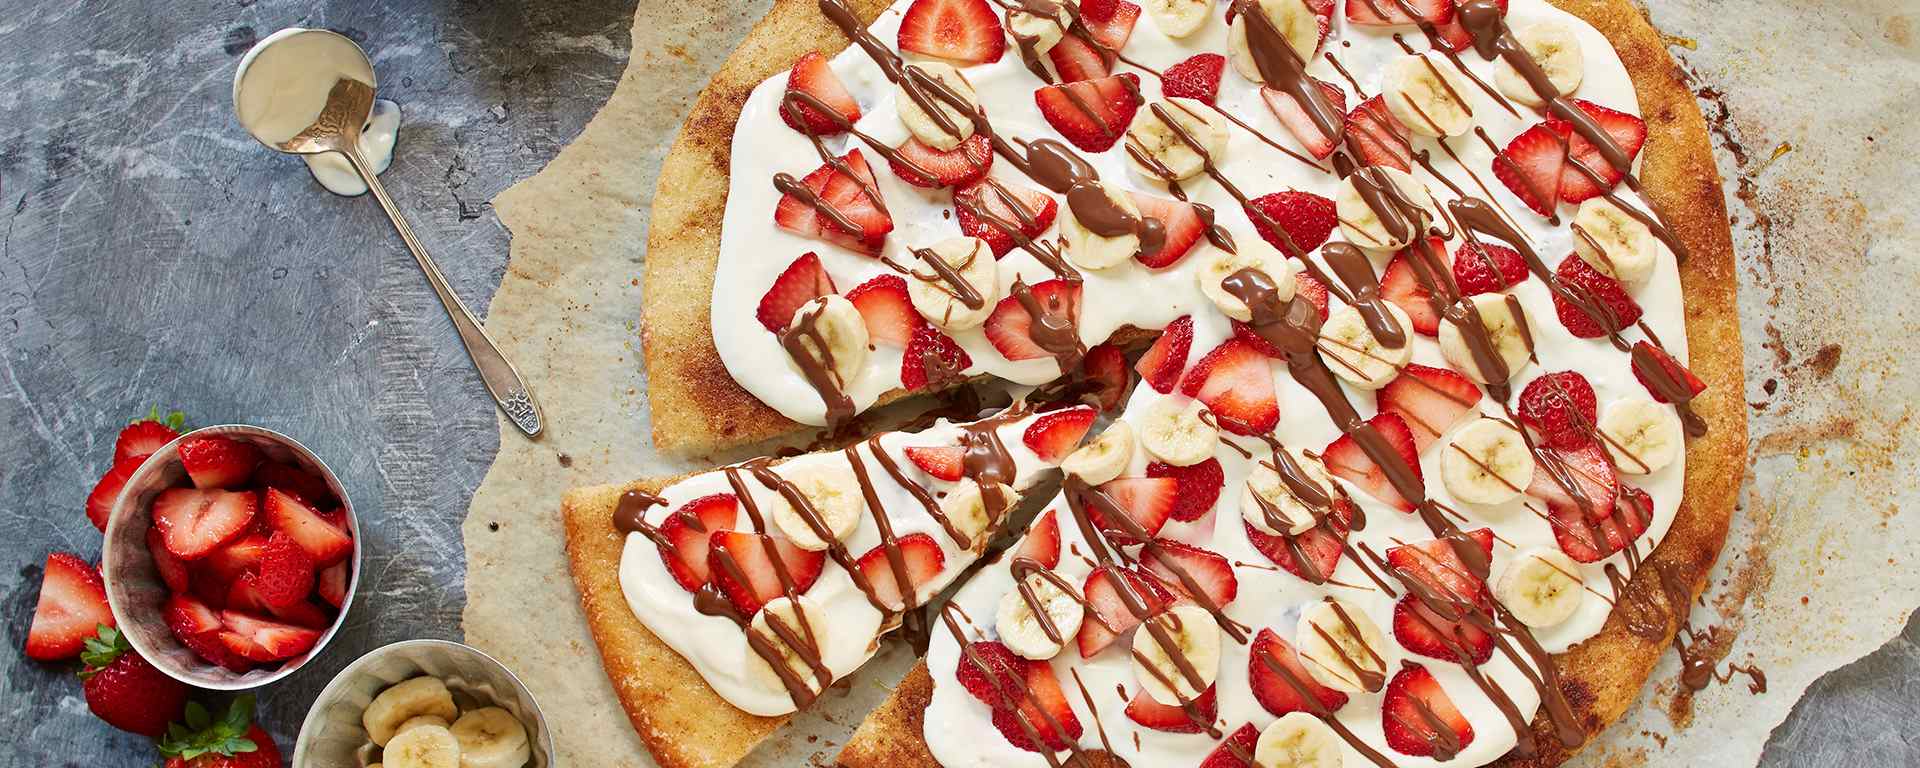 Photo for - Pizza chocolat-noisette avec fraises et bananes